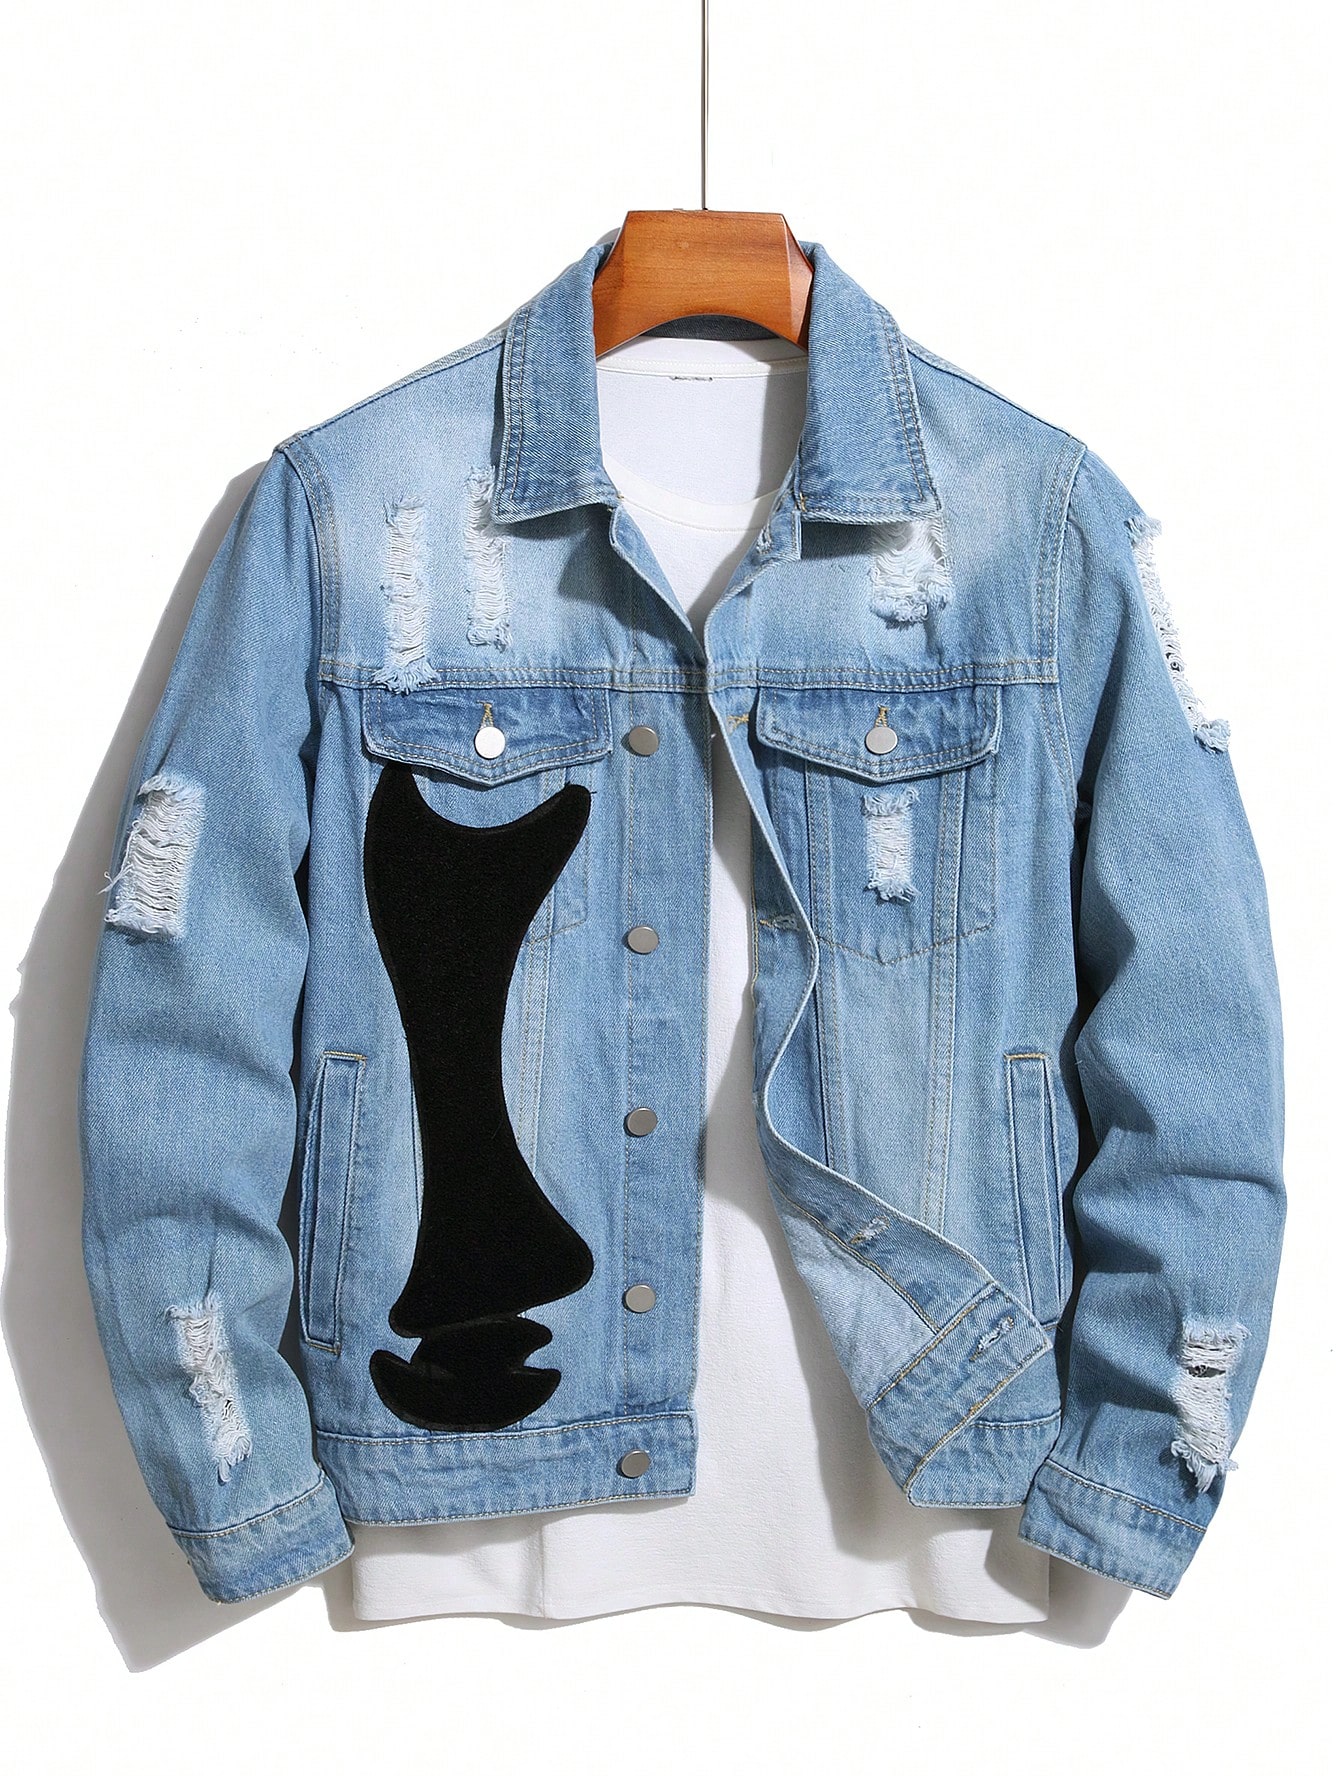 Мужская джинсовая куртка Manfinity EMRG с длинными рукавами и потертыми деталями, легкая стирка